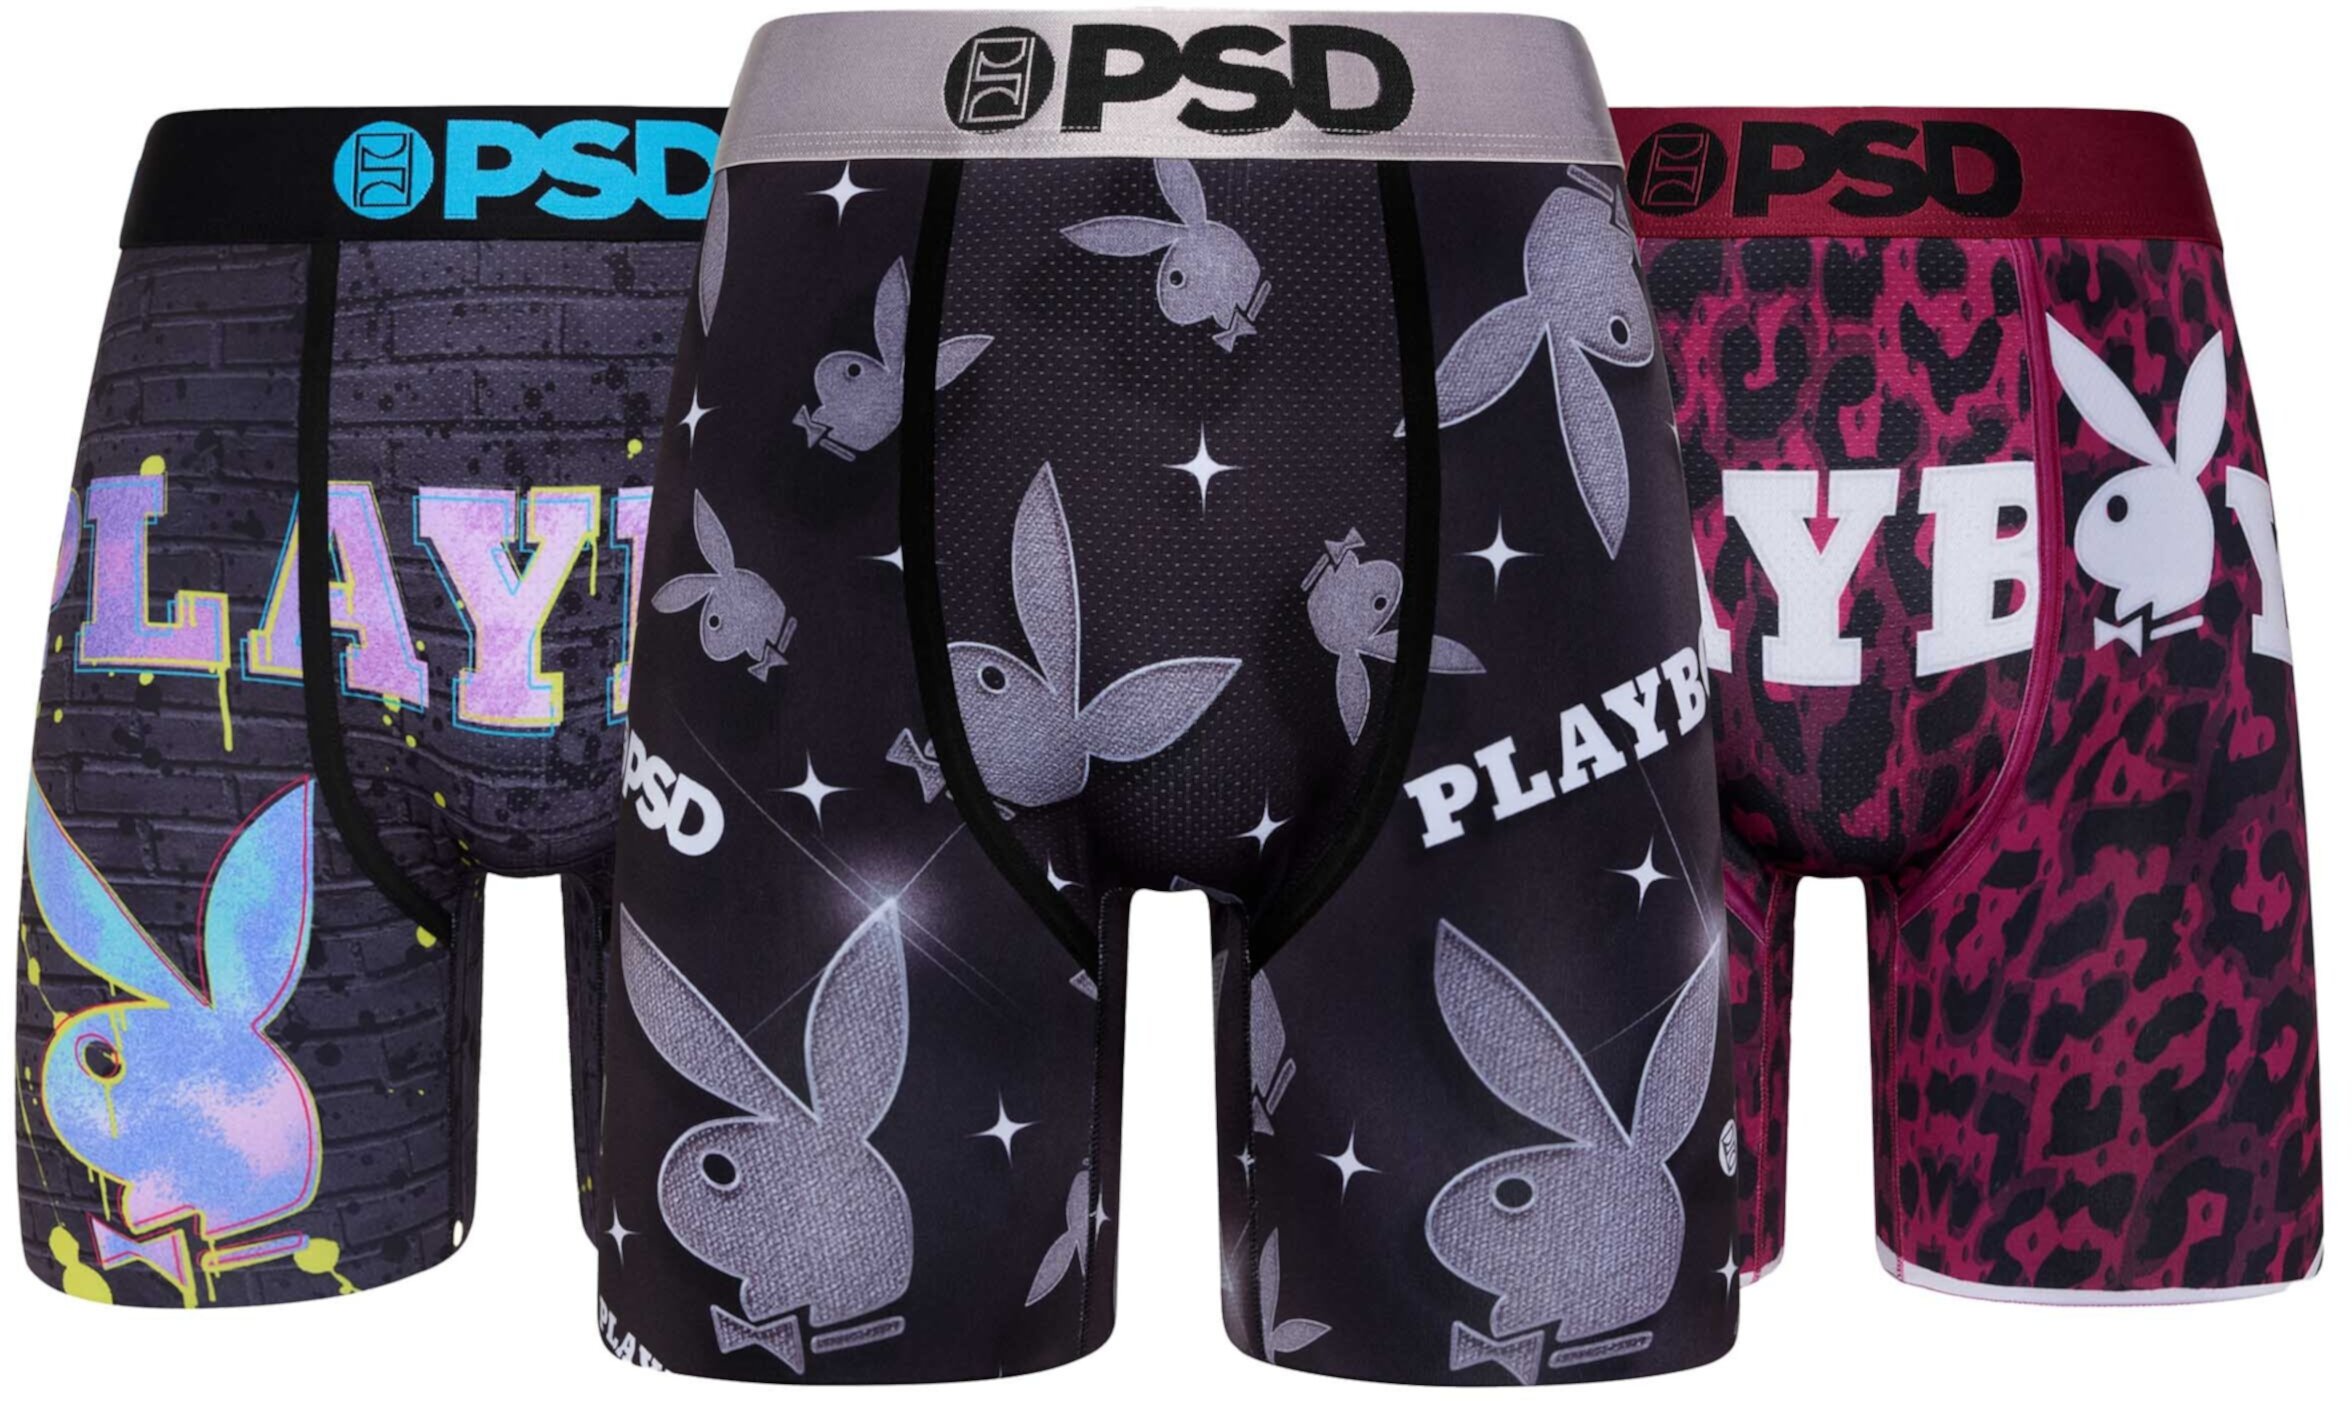 Набор из 3 комплектов Playboy Mix PSD